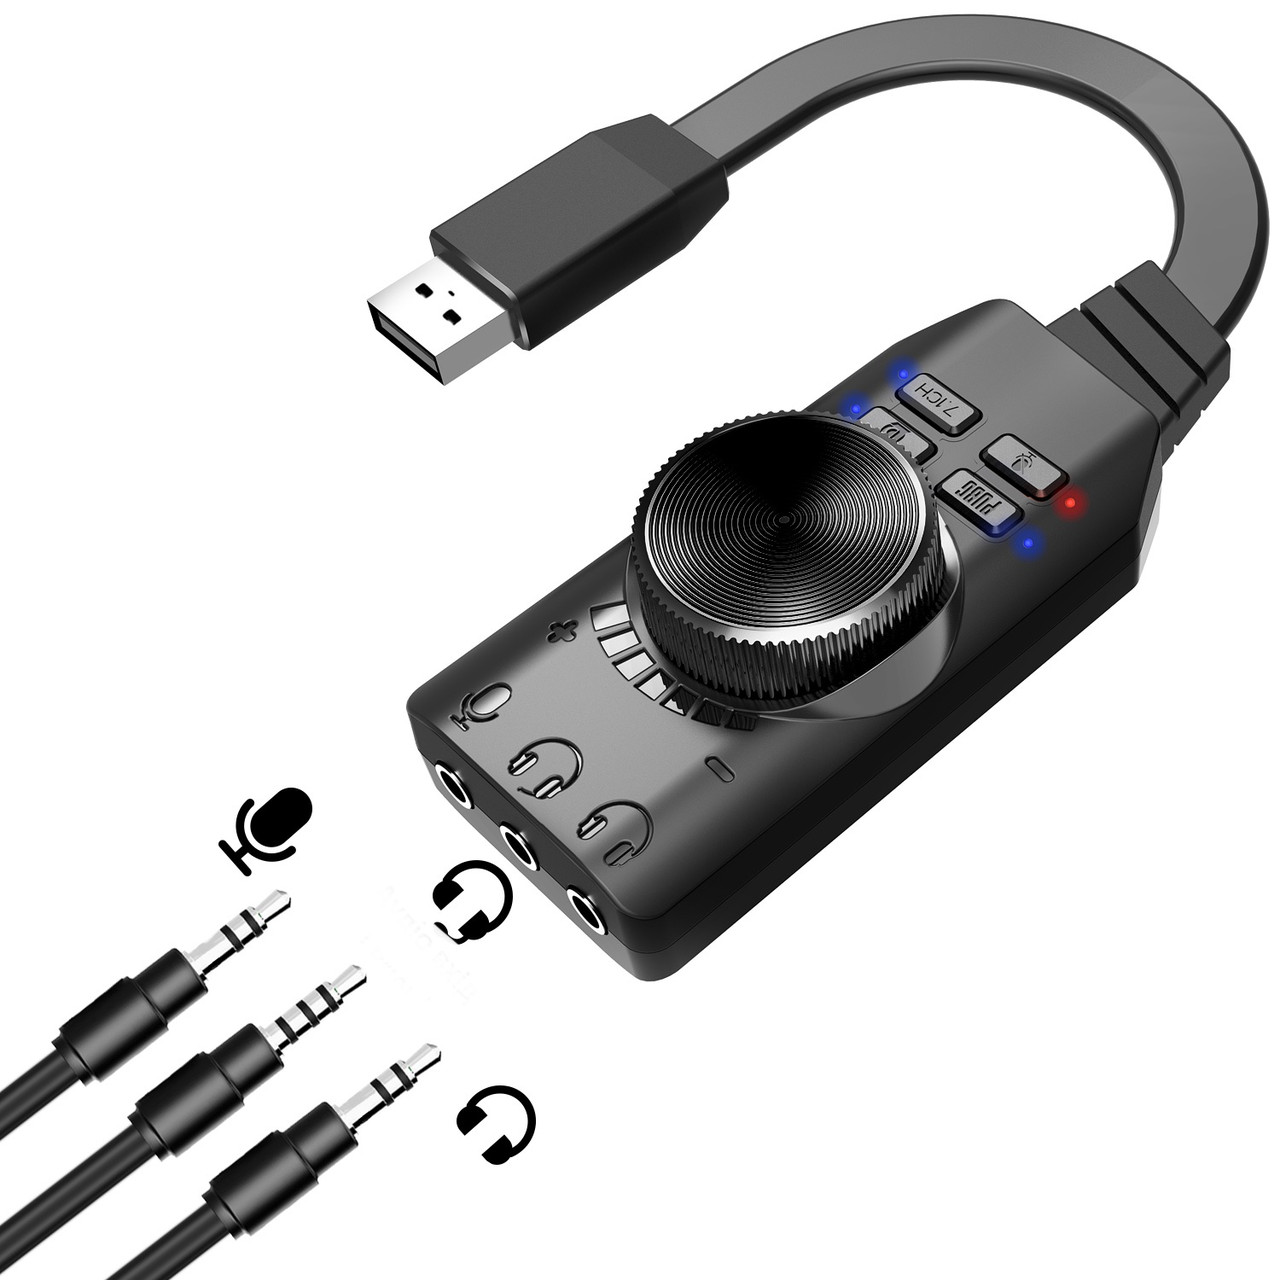 Зовнішня звукова карта USB 7.1 Channel адаптер 3.5 mm для навушників і мікрофона Plextone GS3 Mark2 Black